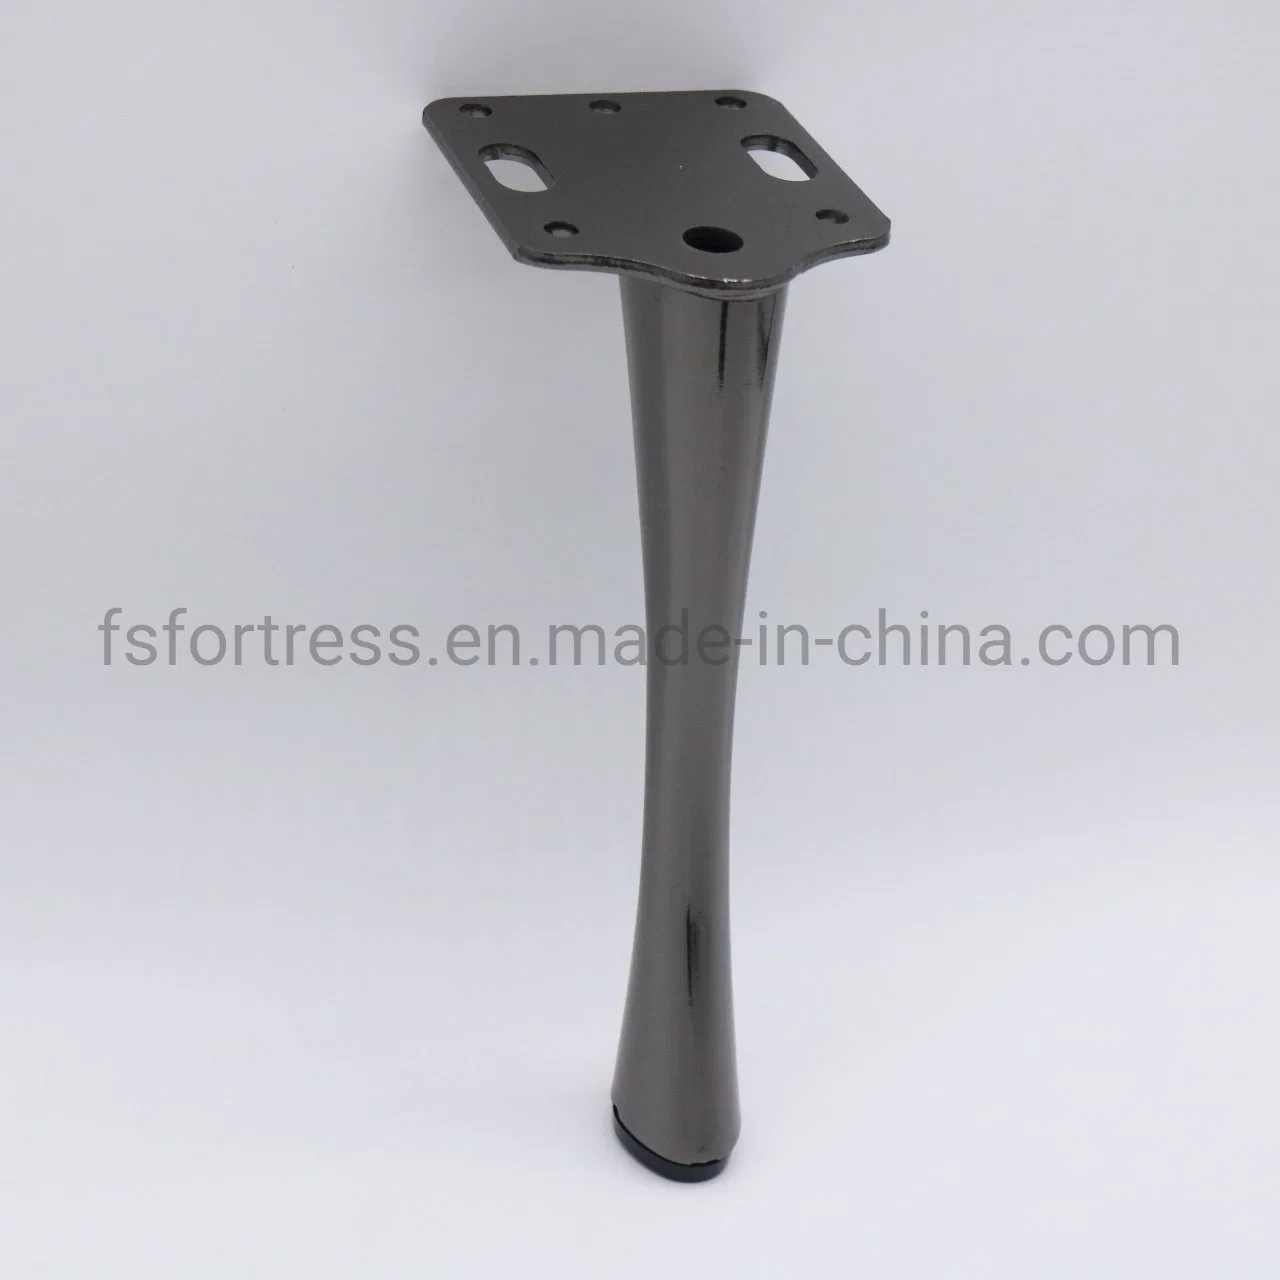 Einzigartige Form Zarte Tisch Bein Sofa Beine Möbel Hardware Zubehör Modell SL-161